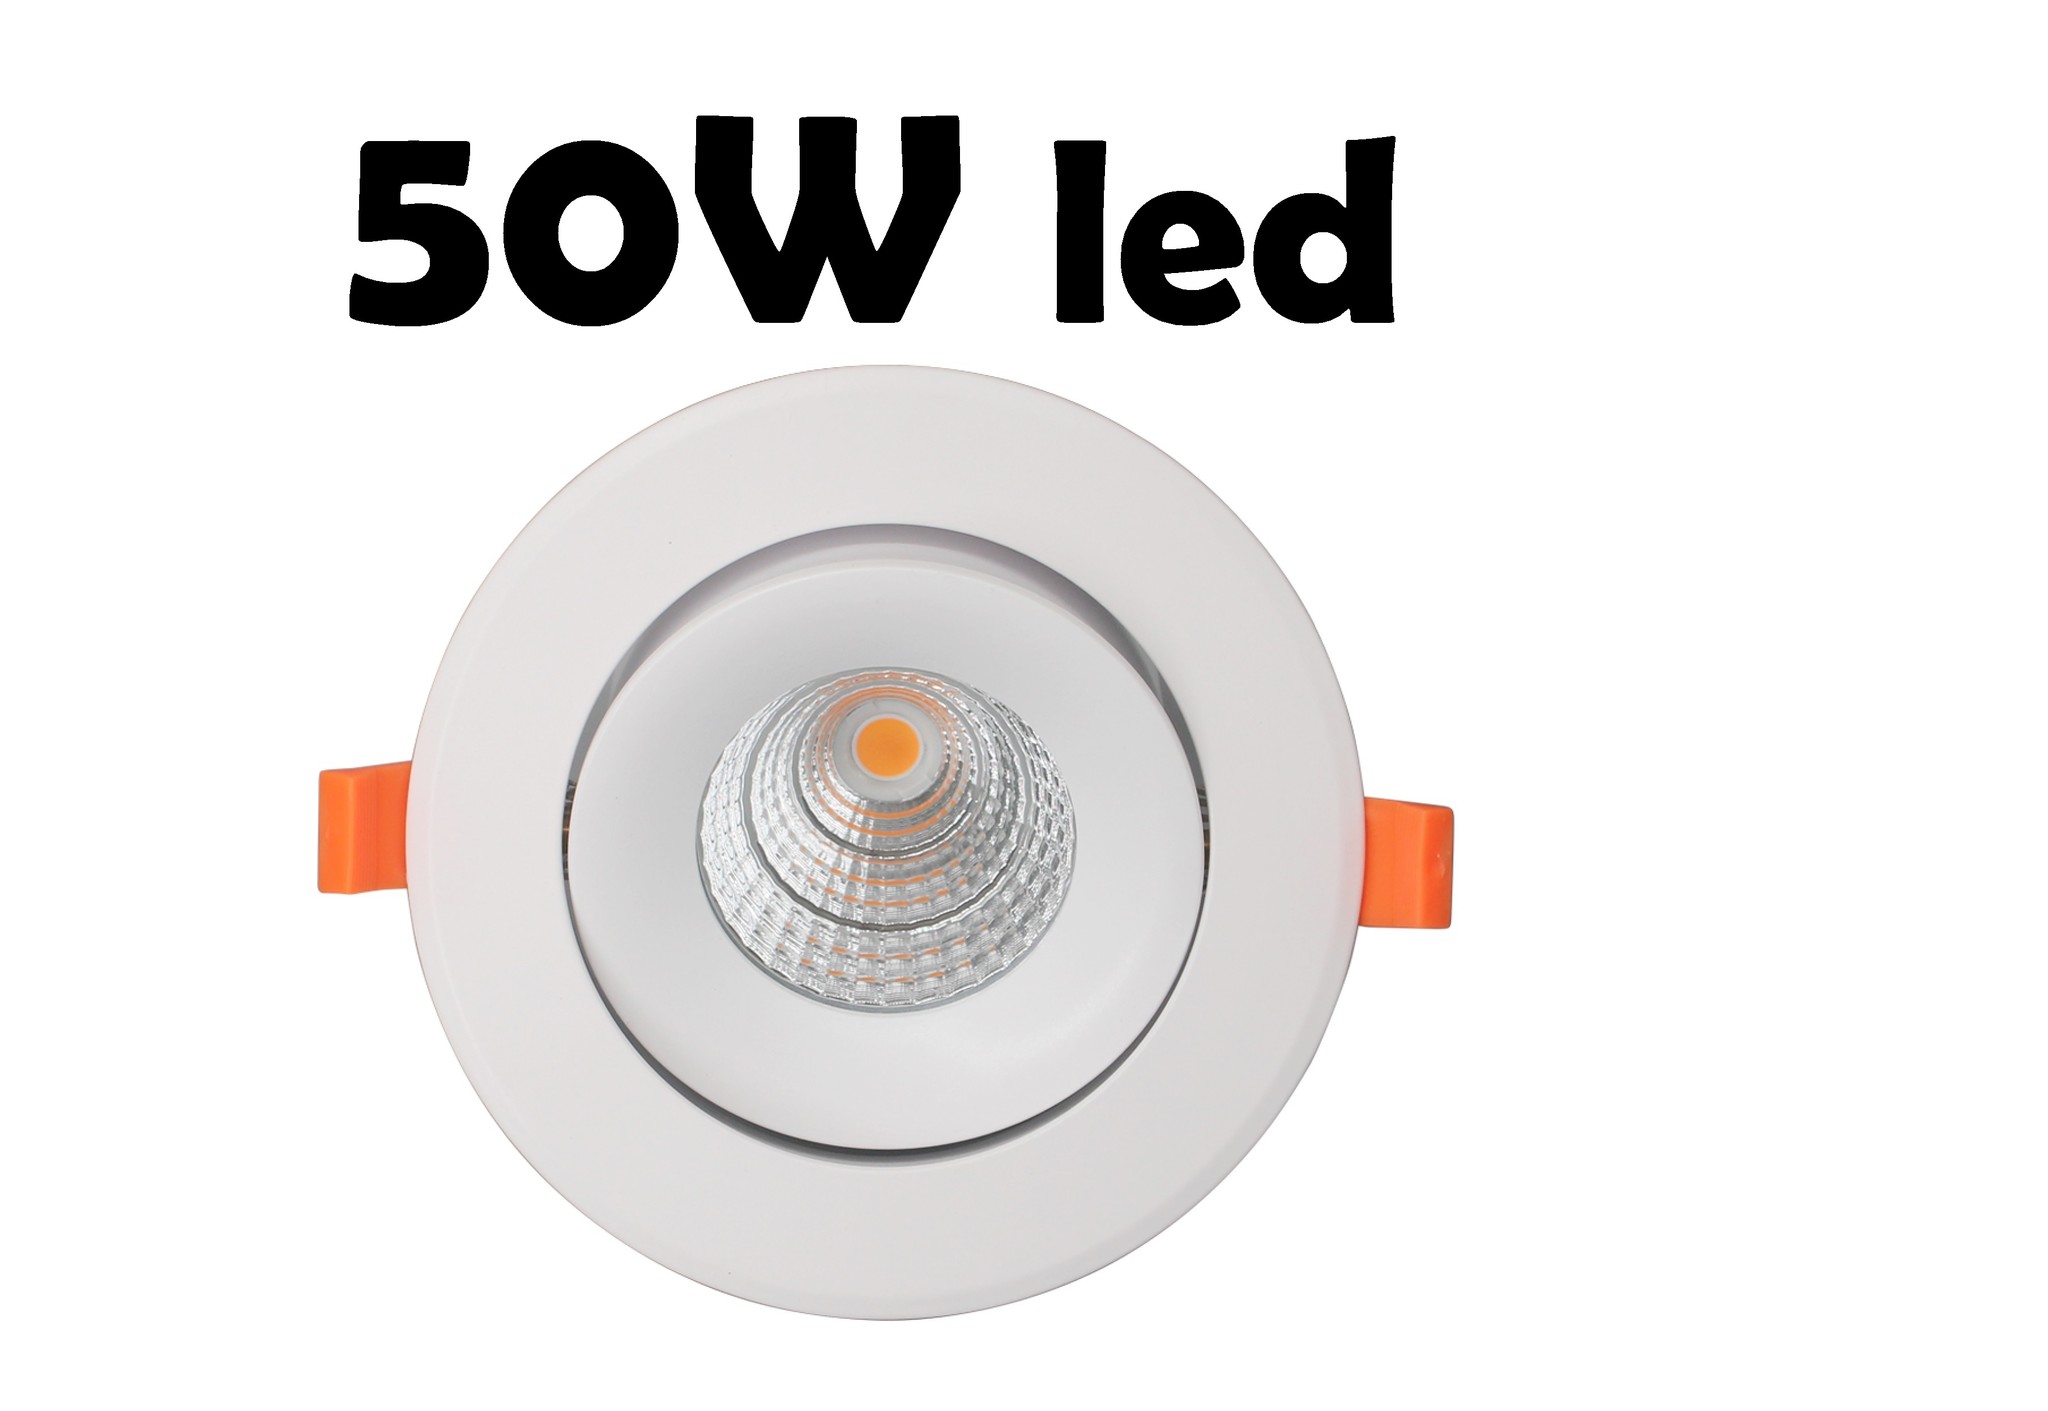 Voorzichtigheid In dienst nemen Zwakheid Grote 50W LED dimbare inbouwspot 5 jaar garantie 193 mm buitenmaat | My  Planet LED